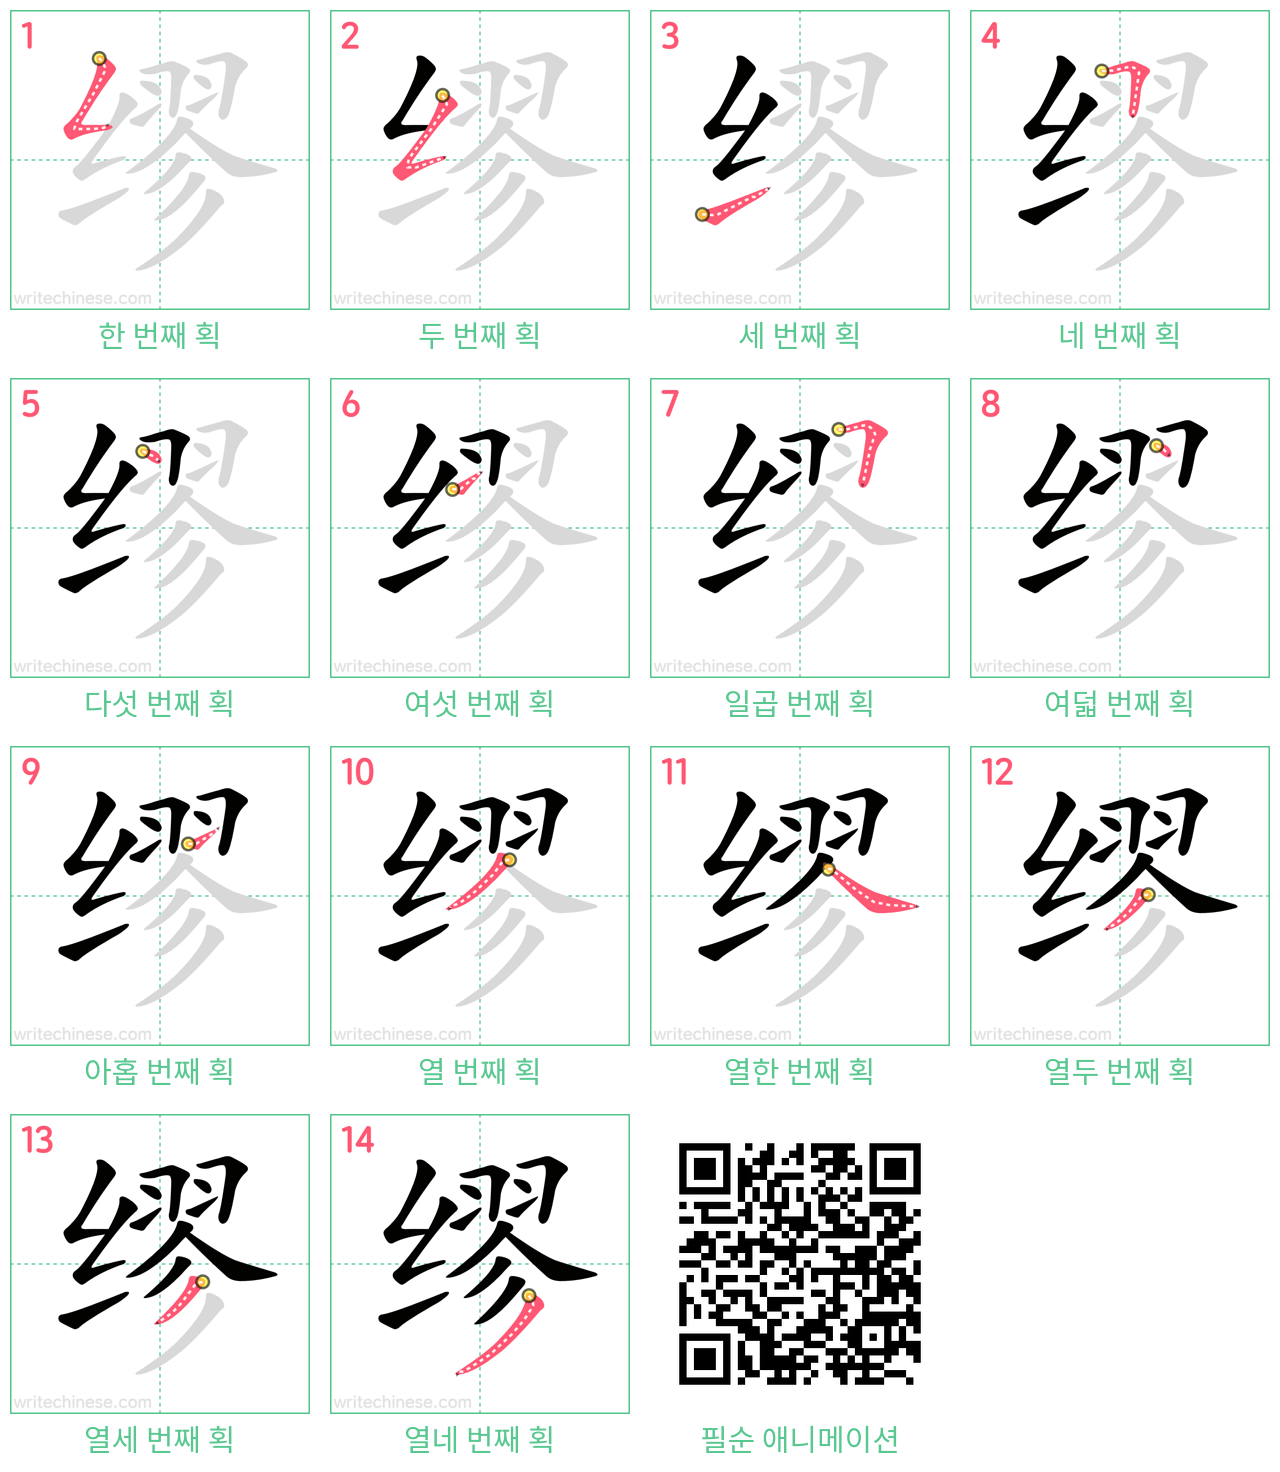 缪 step-by-step stroke order diagrams